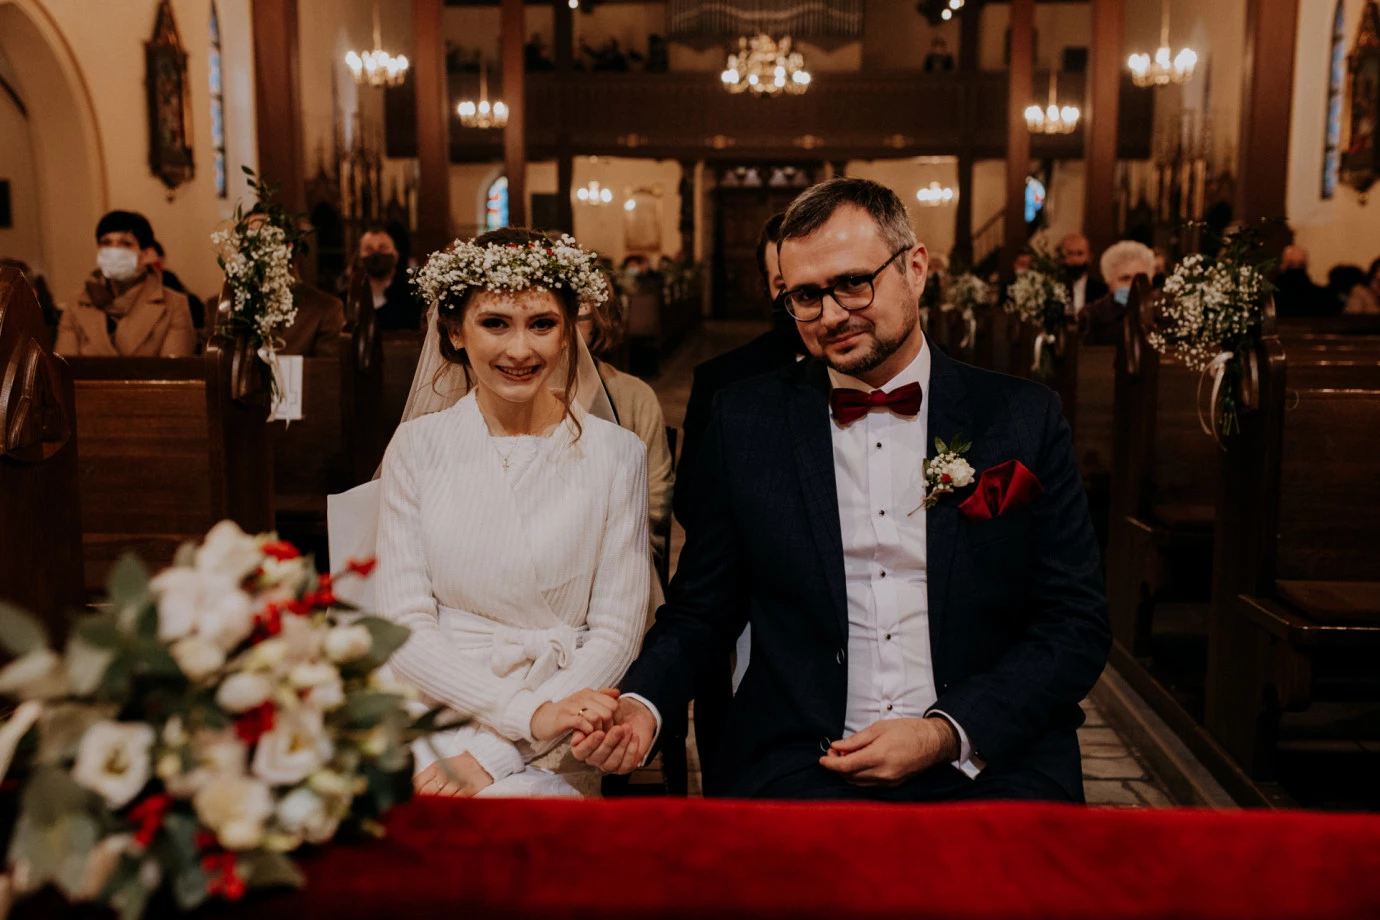 zdjęcia krakow fotograf roseart-roza-czajka portfolio zdjecia slubne inspiracje wesele plener slubny sesja slubna